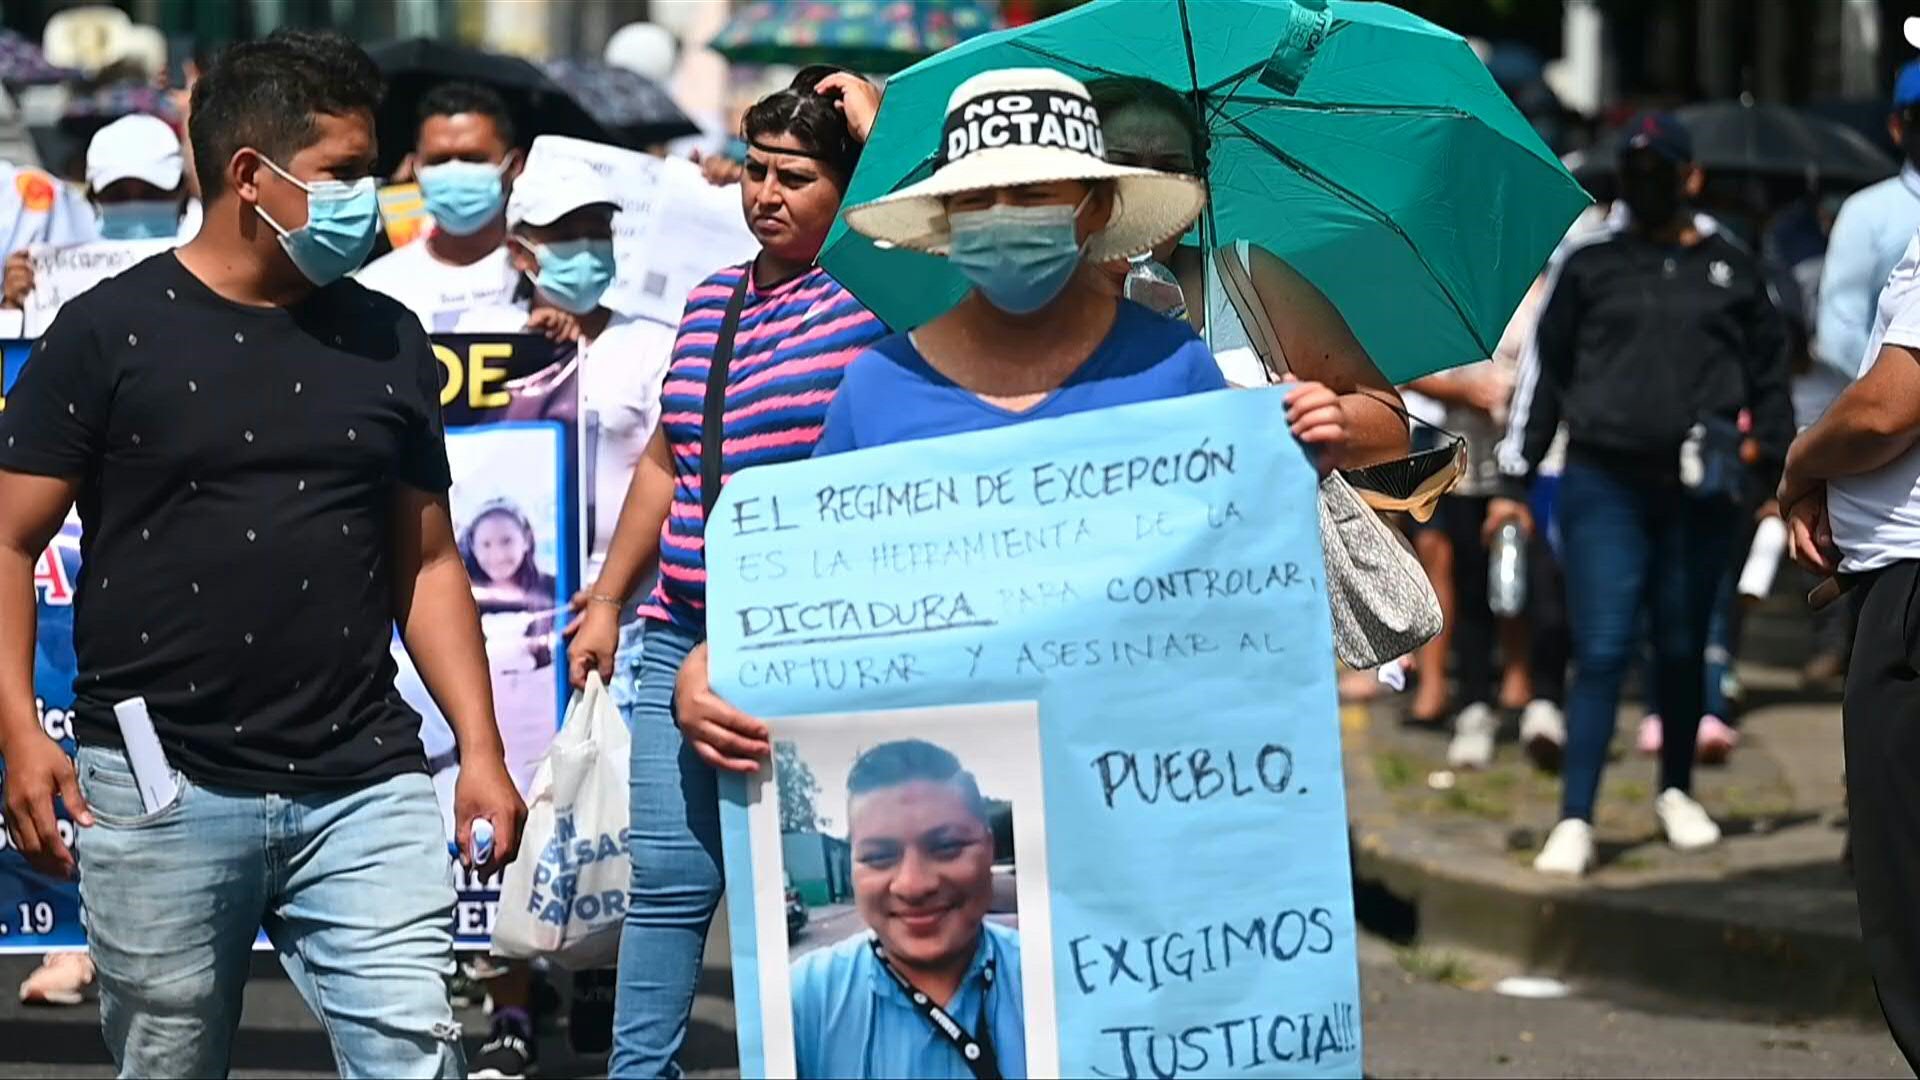 Unas 200 personas protestaron en El Salvador para exigir a los jueces la liberación de sus familiares detenidos “ilegalmente” durante el régimen de excepción, vigente desde marzo como medida contra las pandillas, y los acusaron de “complicidad” con las violaciones a derechos humanos. (AFP)